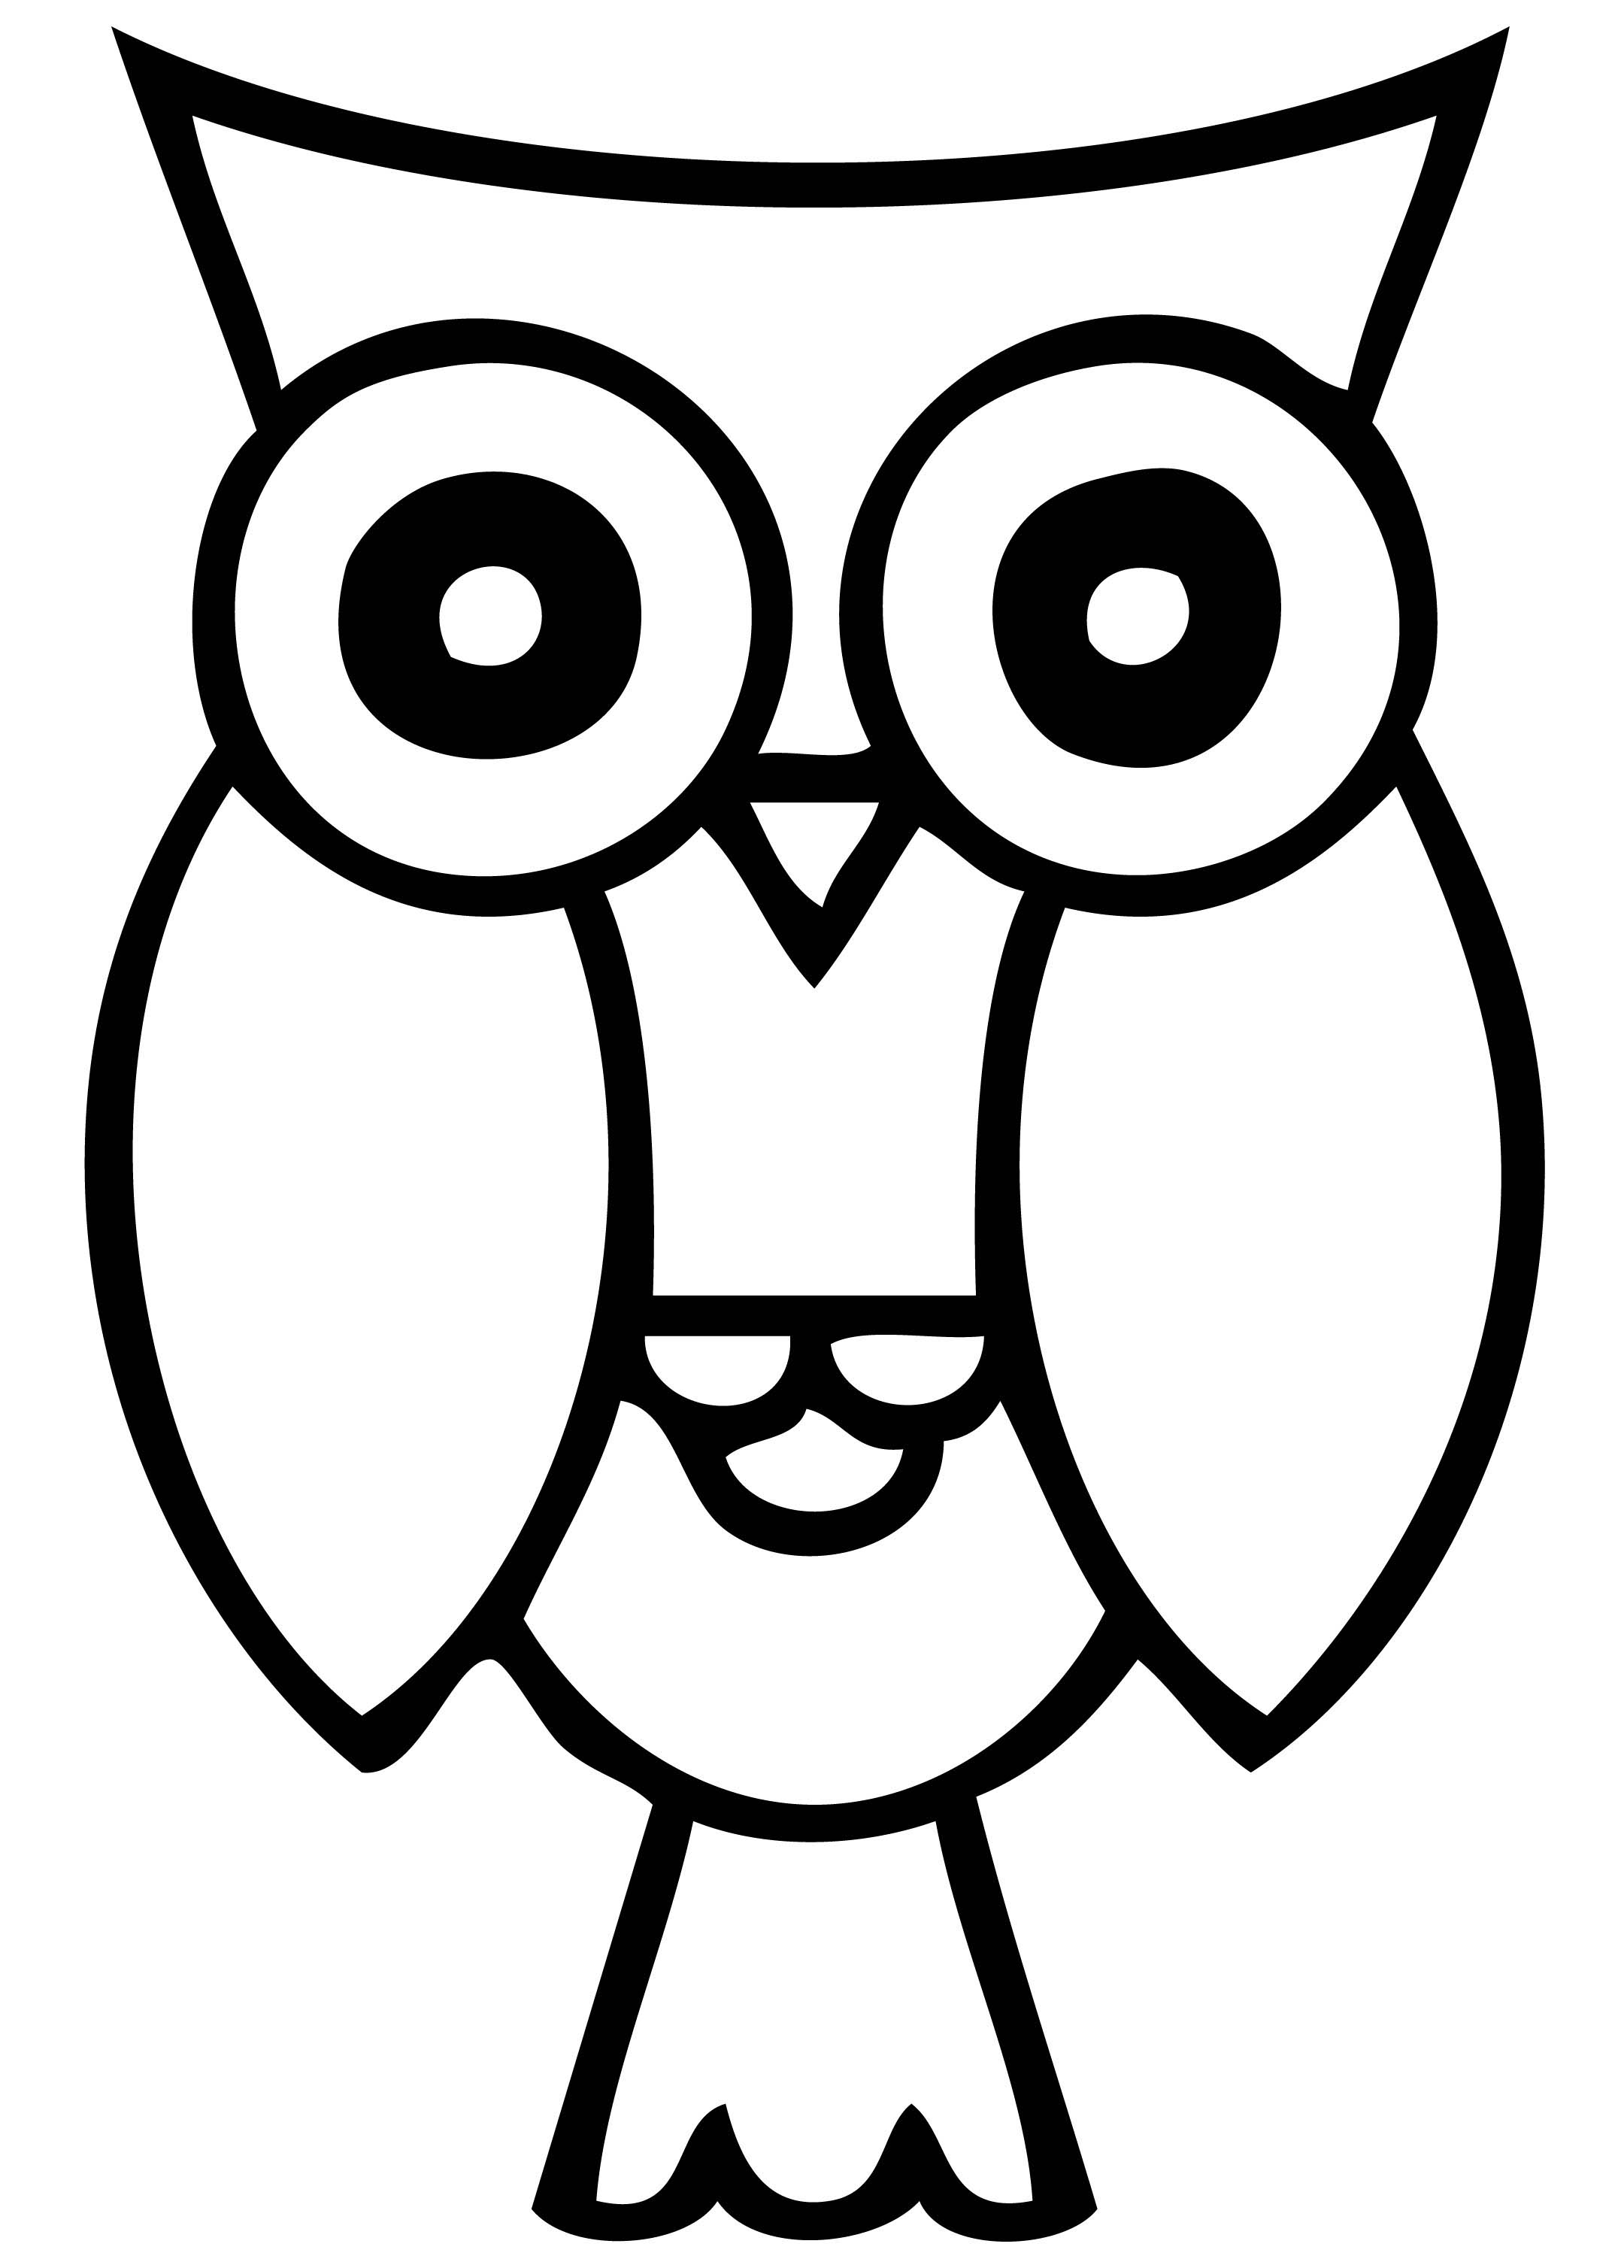 snowy owl clip art - photo #44